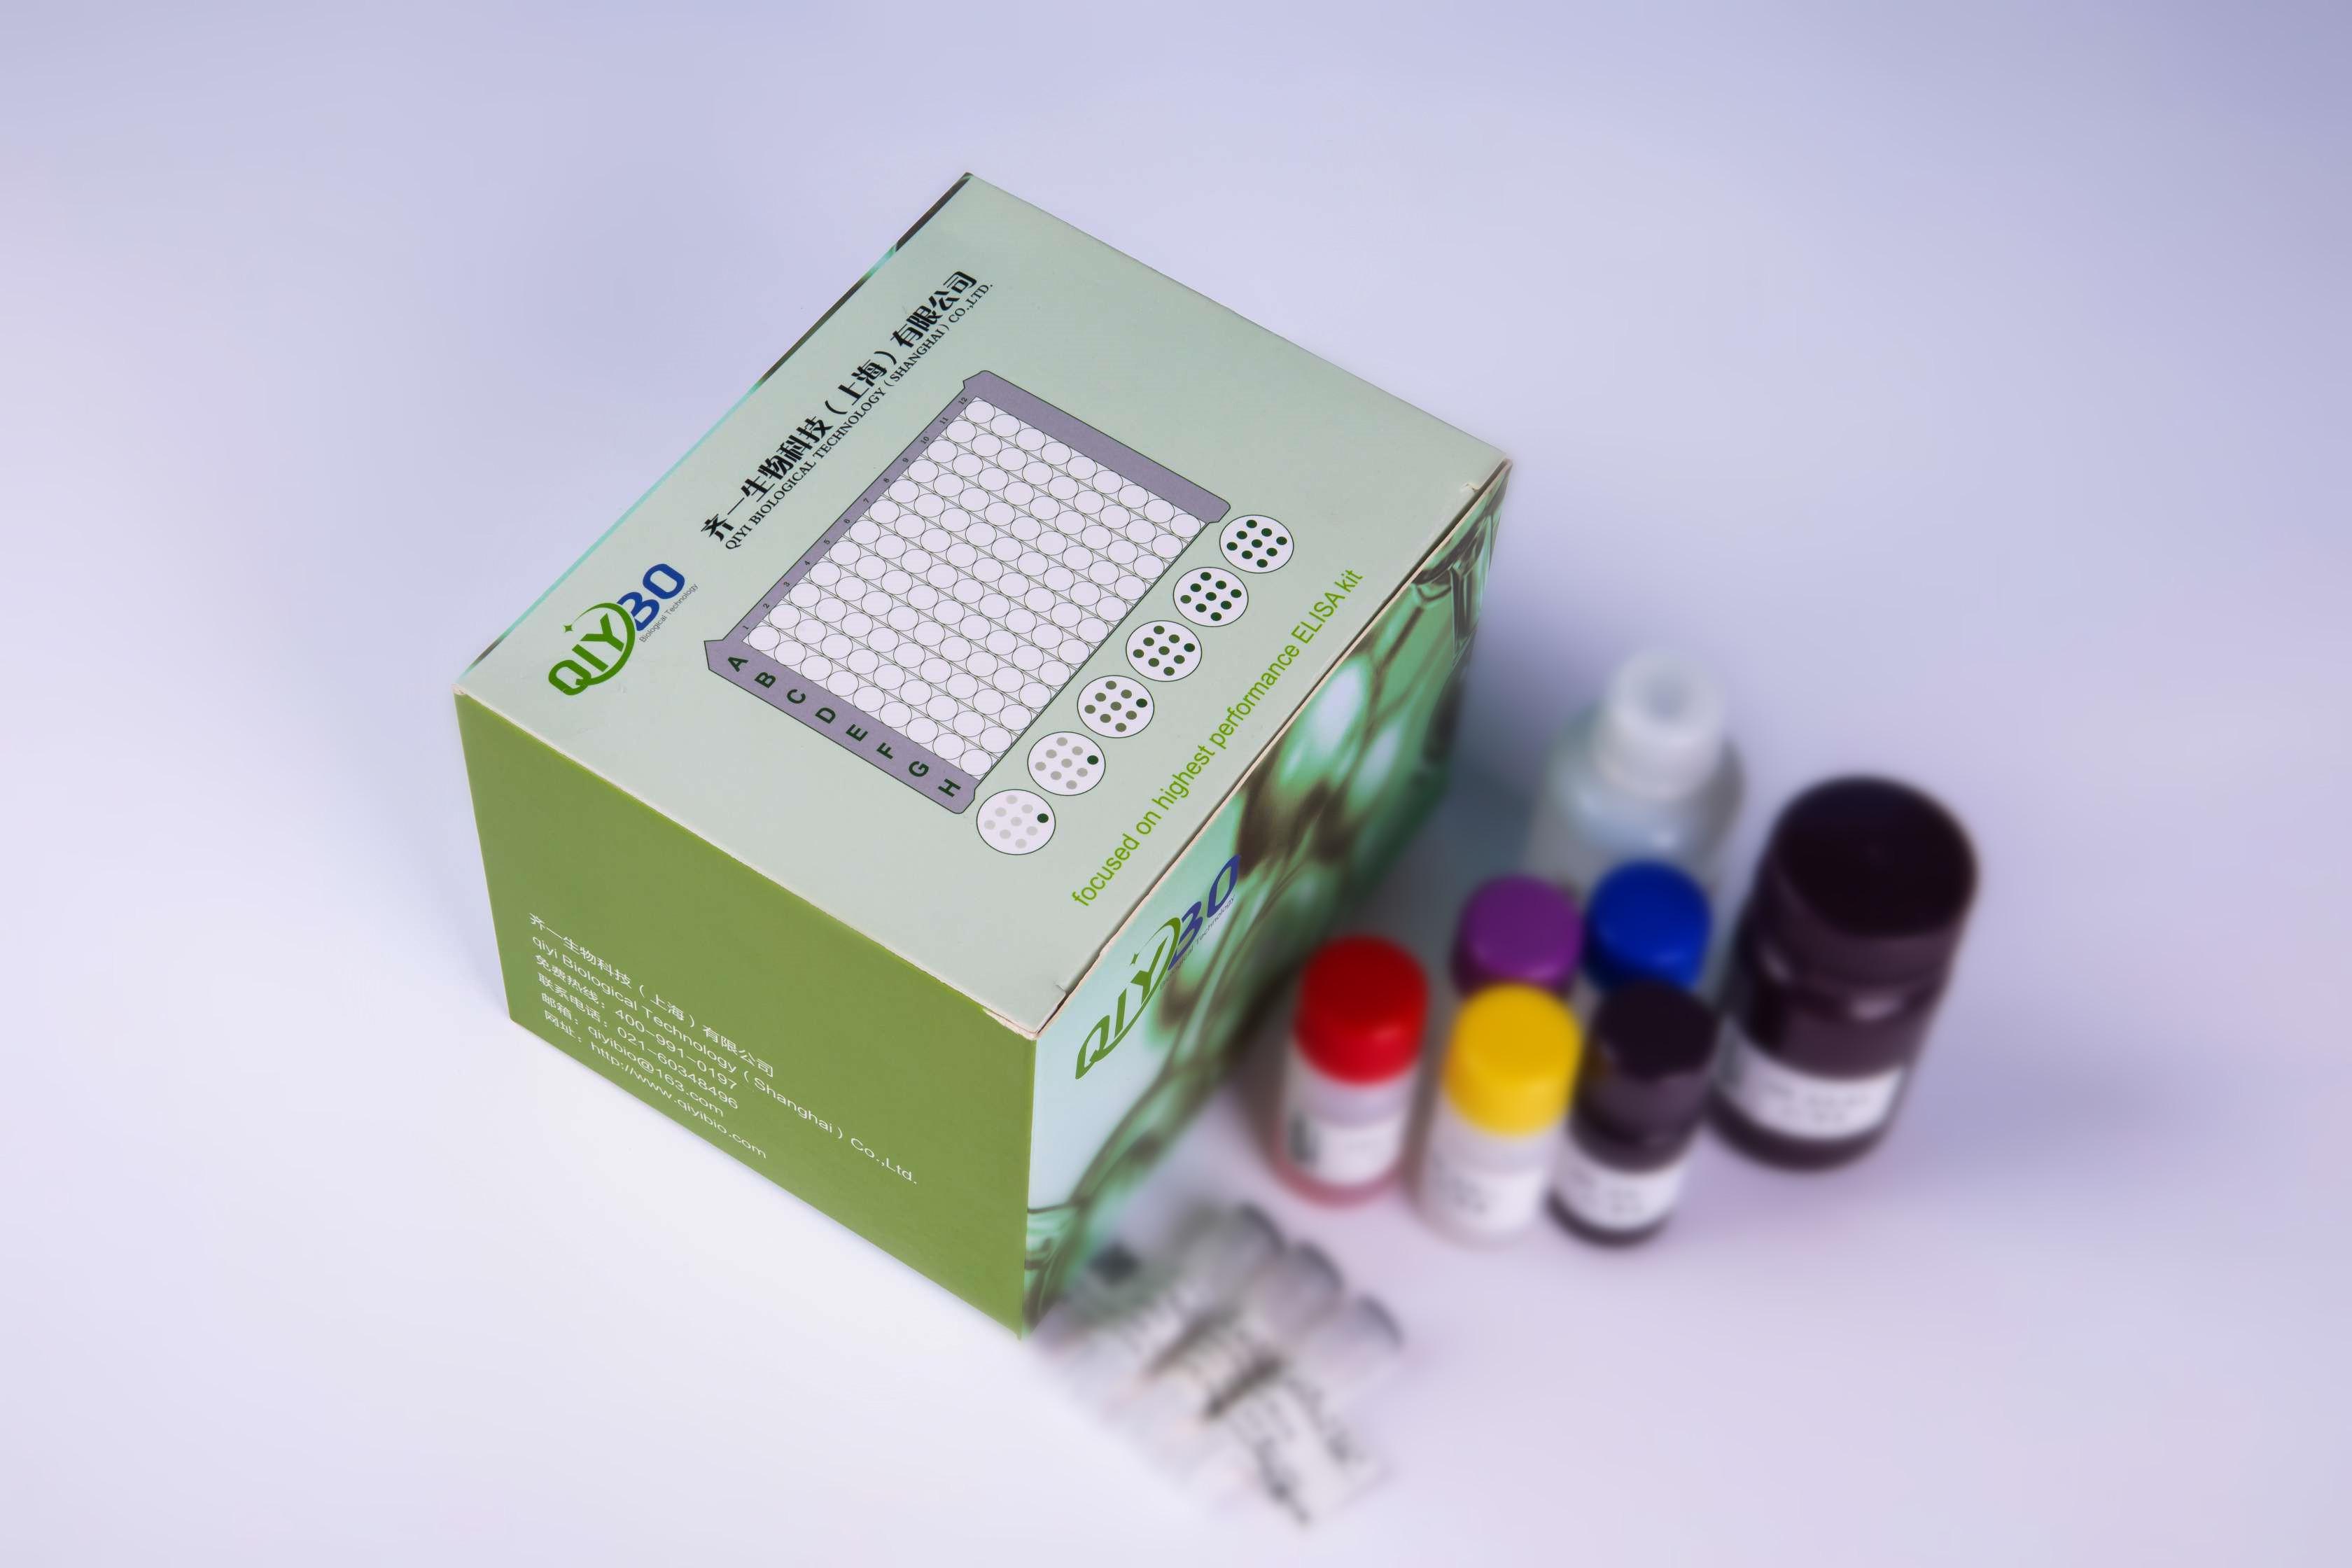 大鼠甲状旁腺激素(PTH)ELISA试剂盒